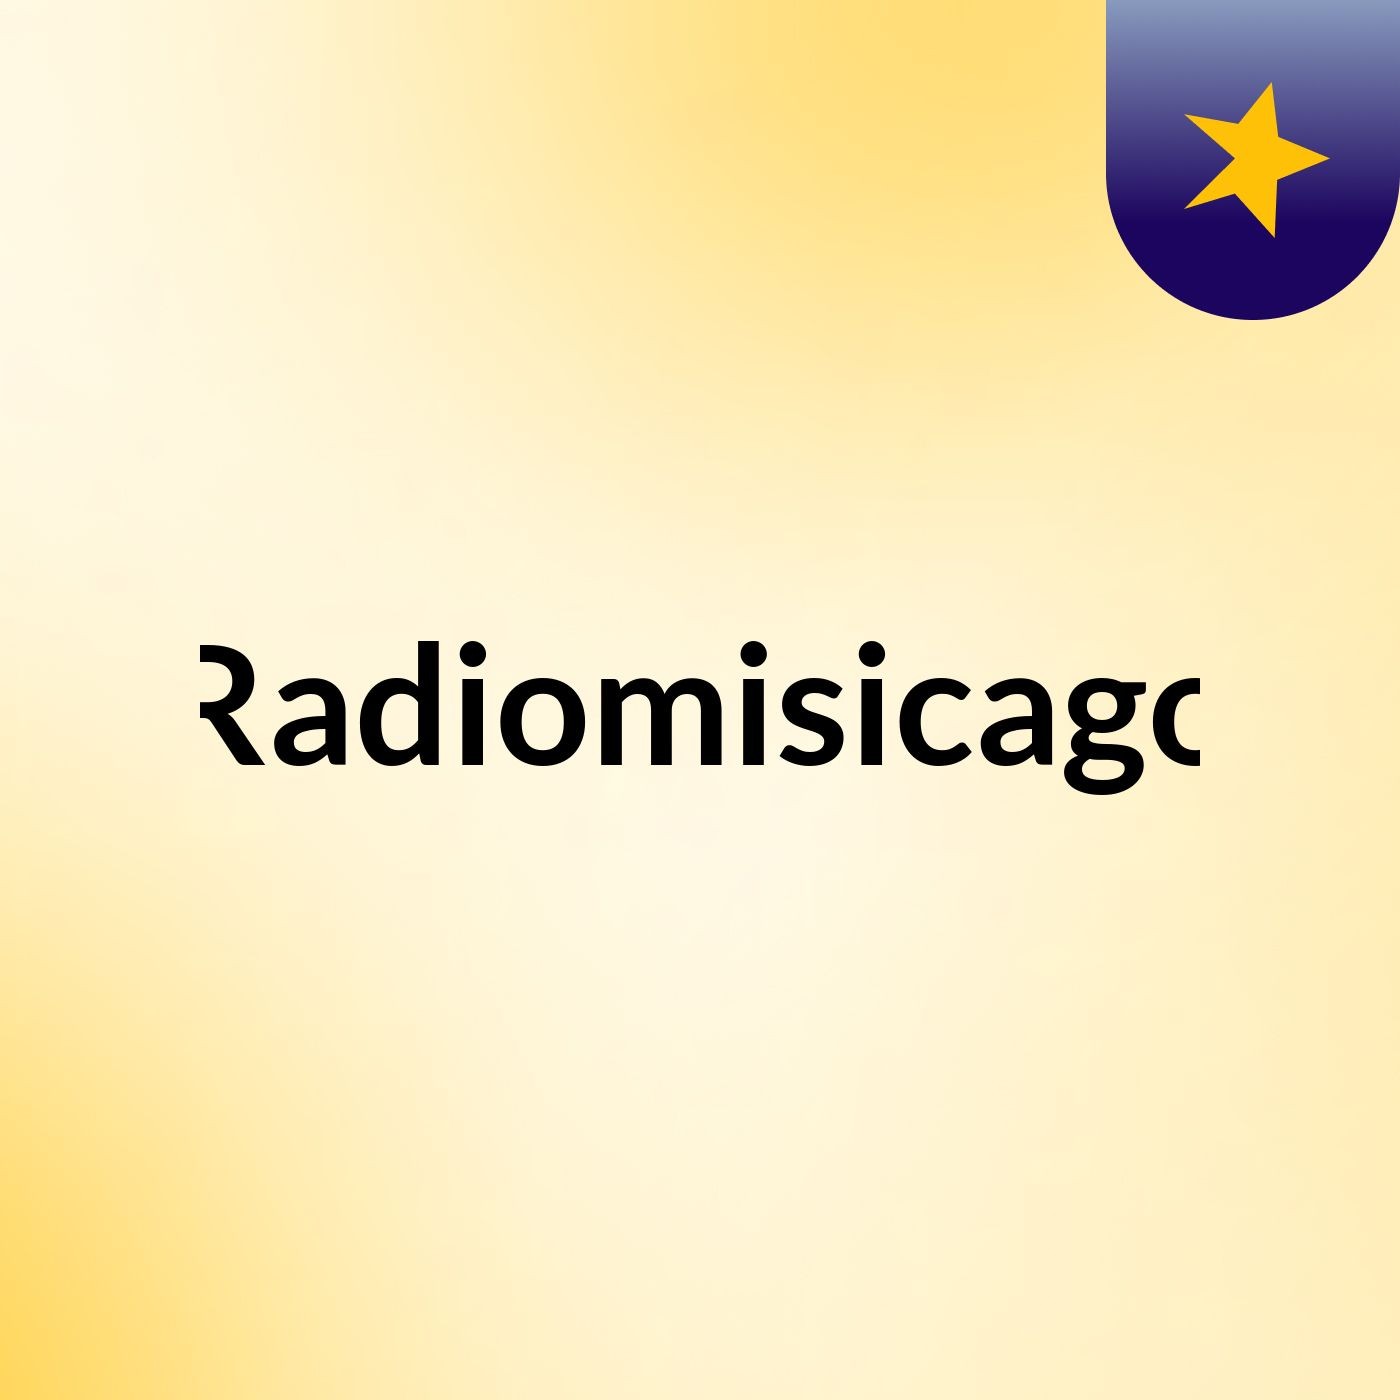 Radiomisicago